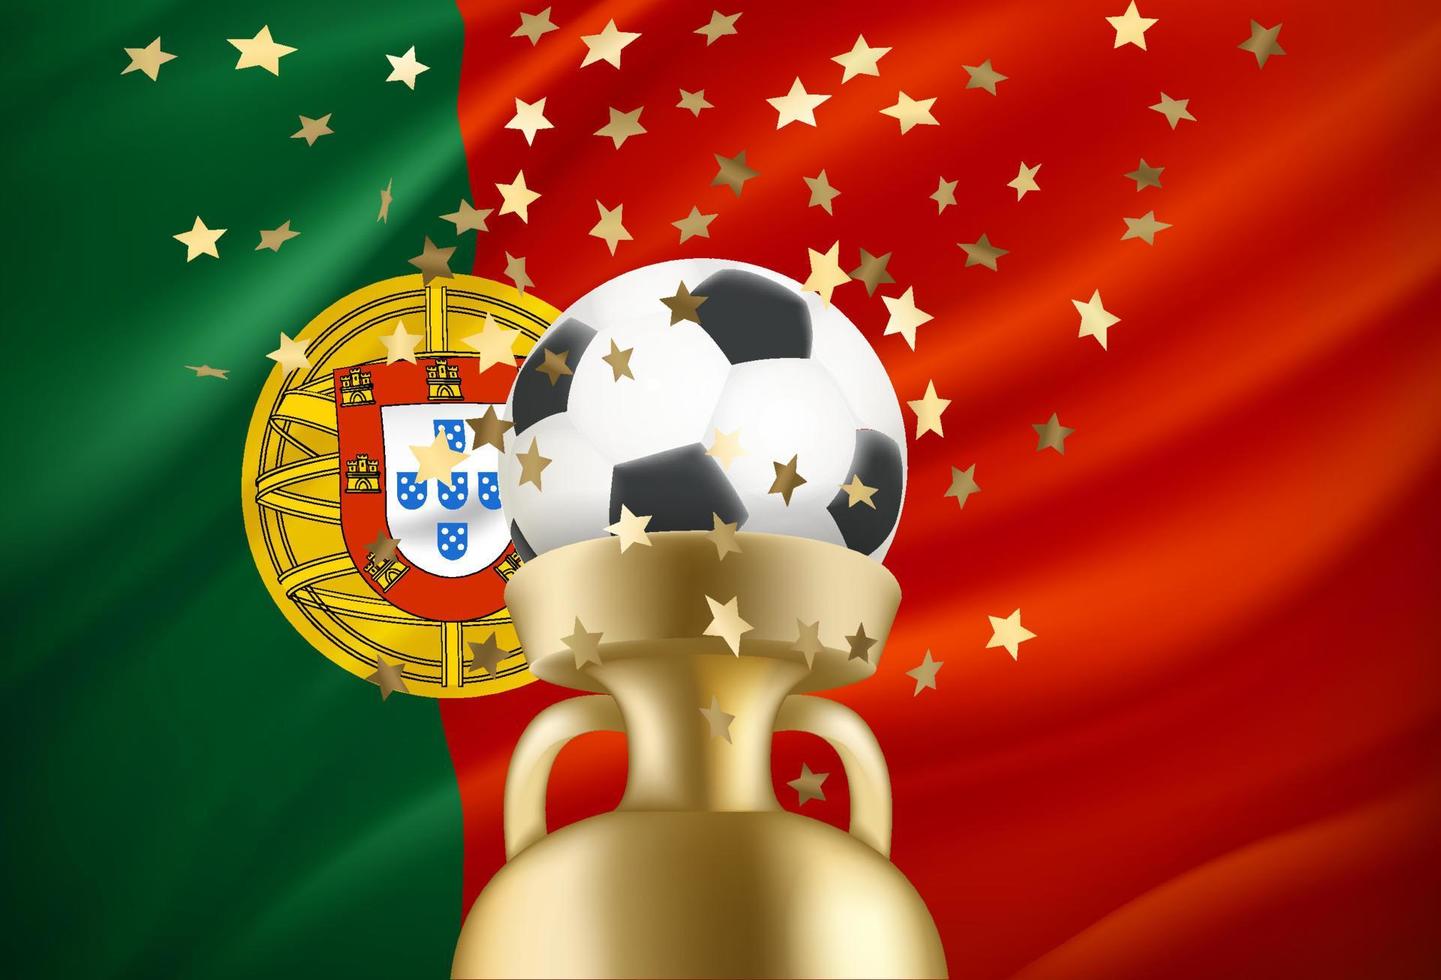 le portugal est le gagnant du jeu. ballon de football avec prix d'or et drapeau national. illustration vectorielle 3d vecteur